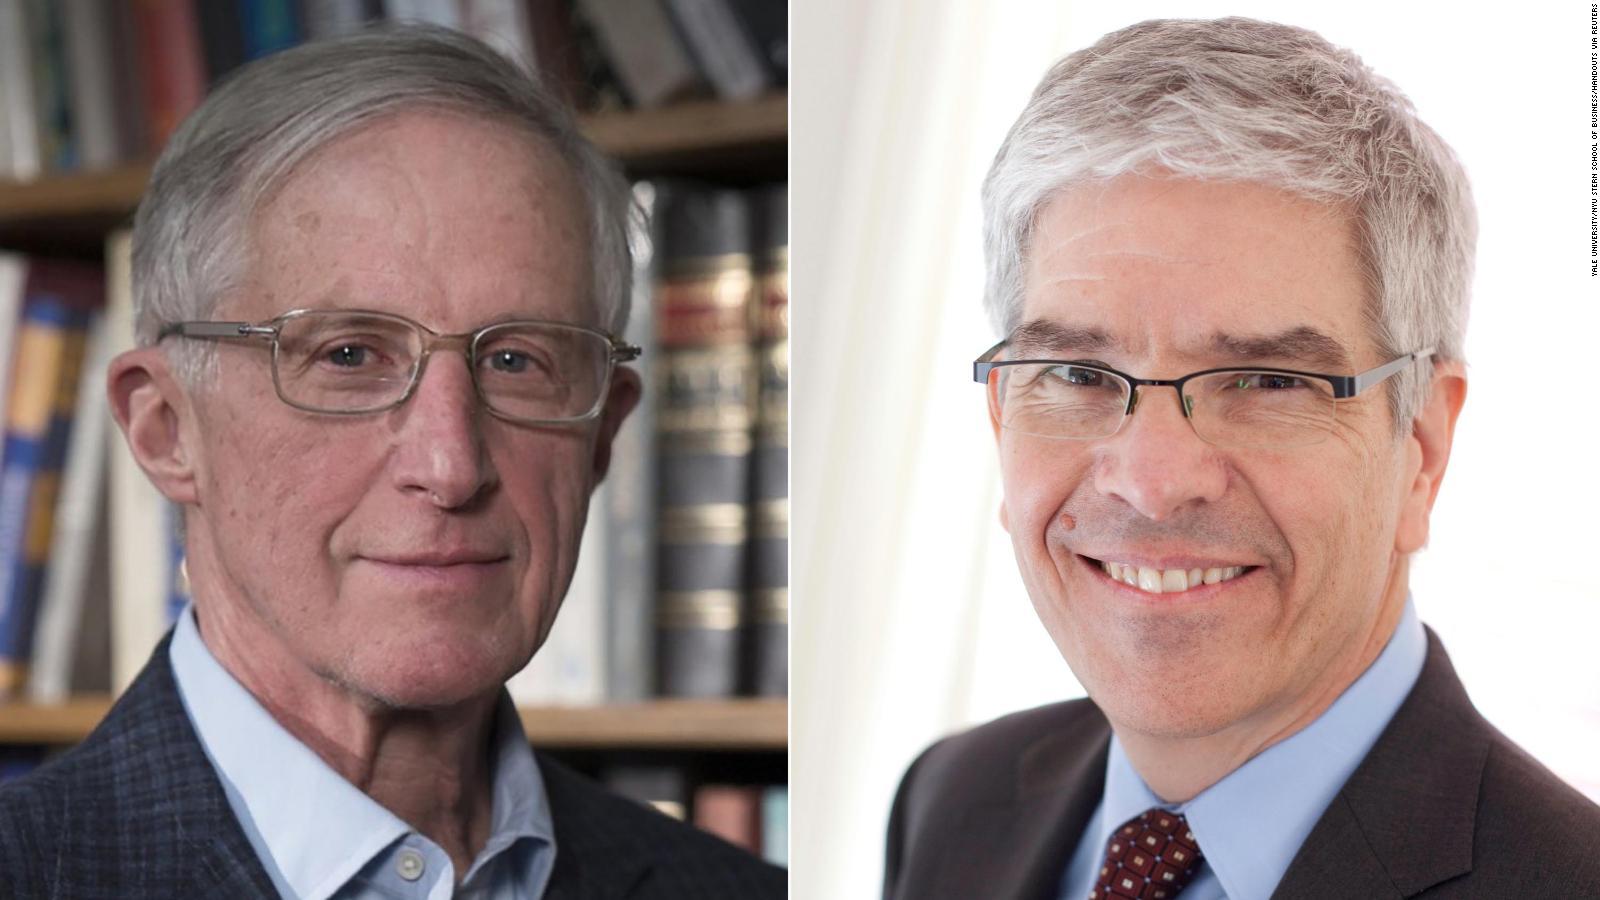 Los estadounidenses William Nordhaus y Paul Romer, pioneros en la adaptación del modelo de crecimiento económico occidental para centrarse en asuntos medioambientales y en compartir los beneficios de la tecnología, ganaron el Premio Nobel de Economía 2018.